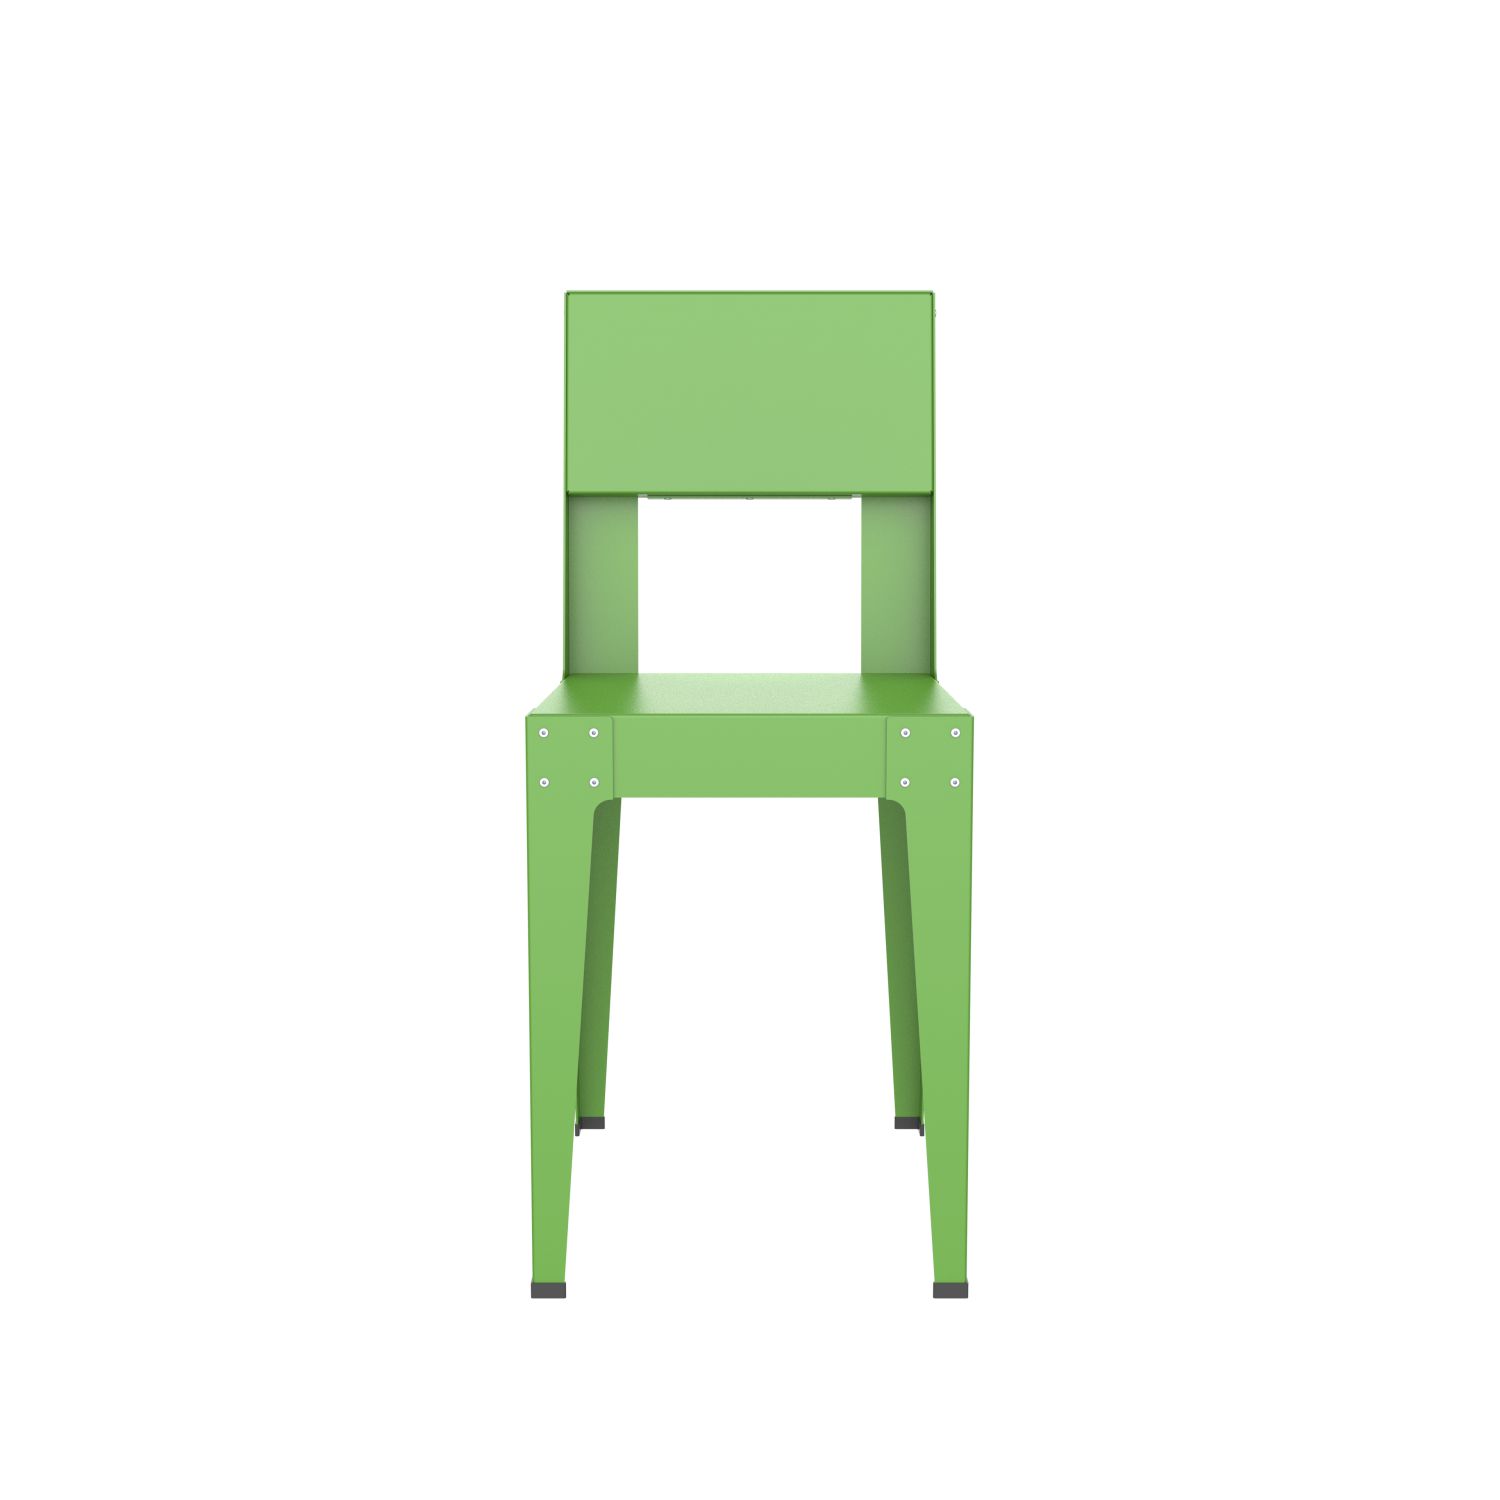 lensvelt piet hein eek aluminium series chair yellow green ral 6018 hard leg ends